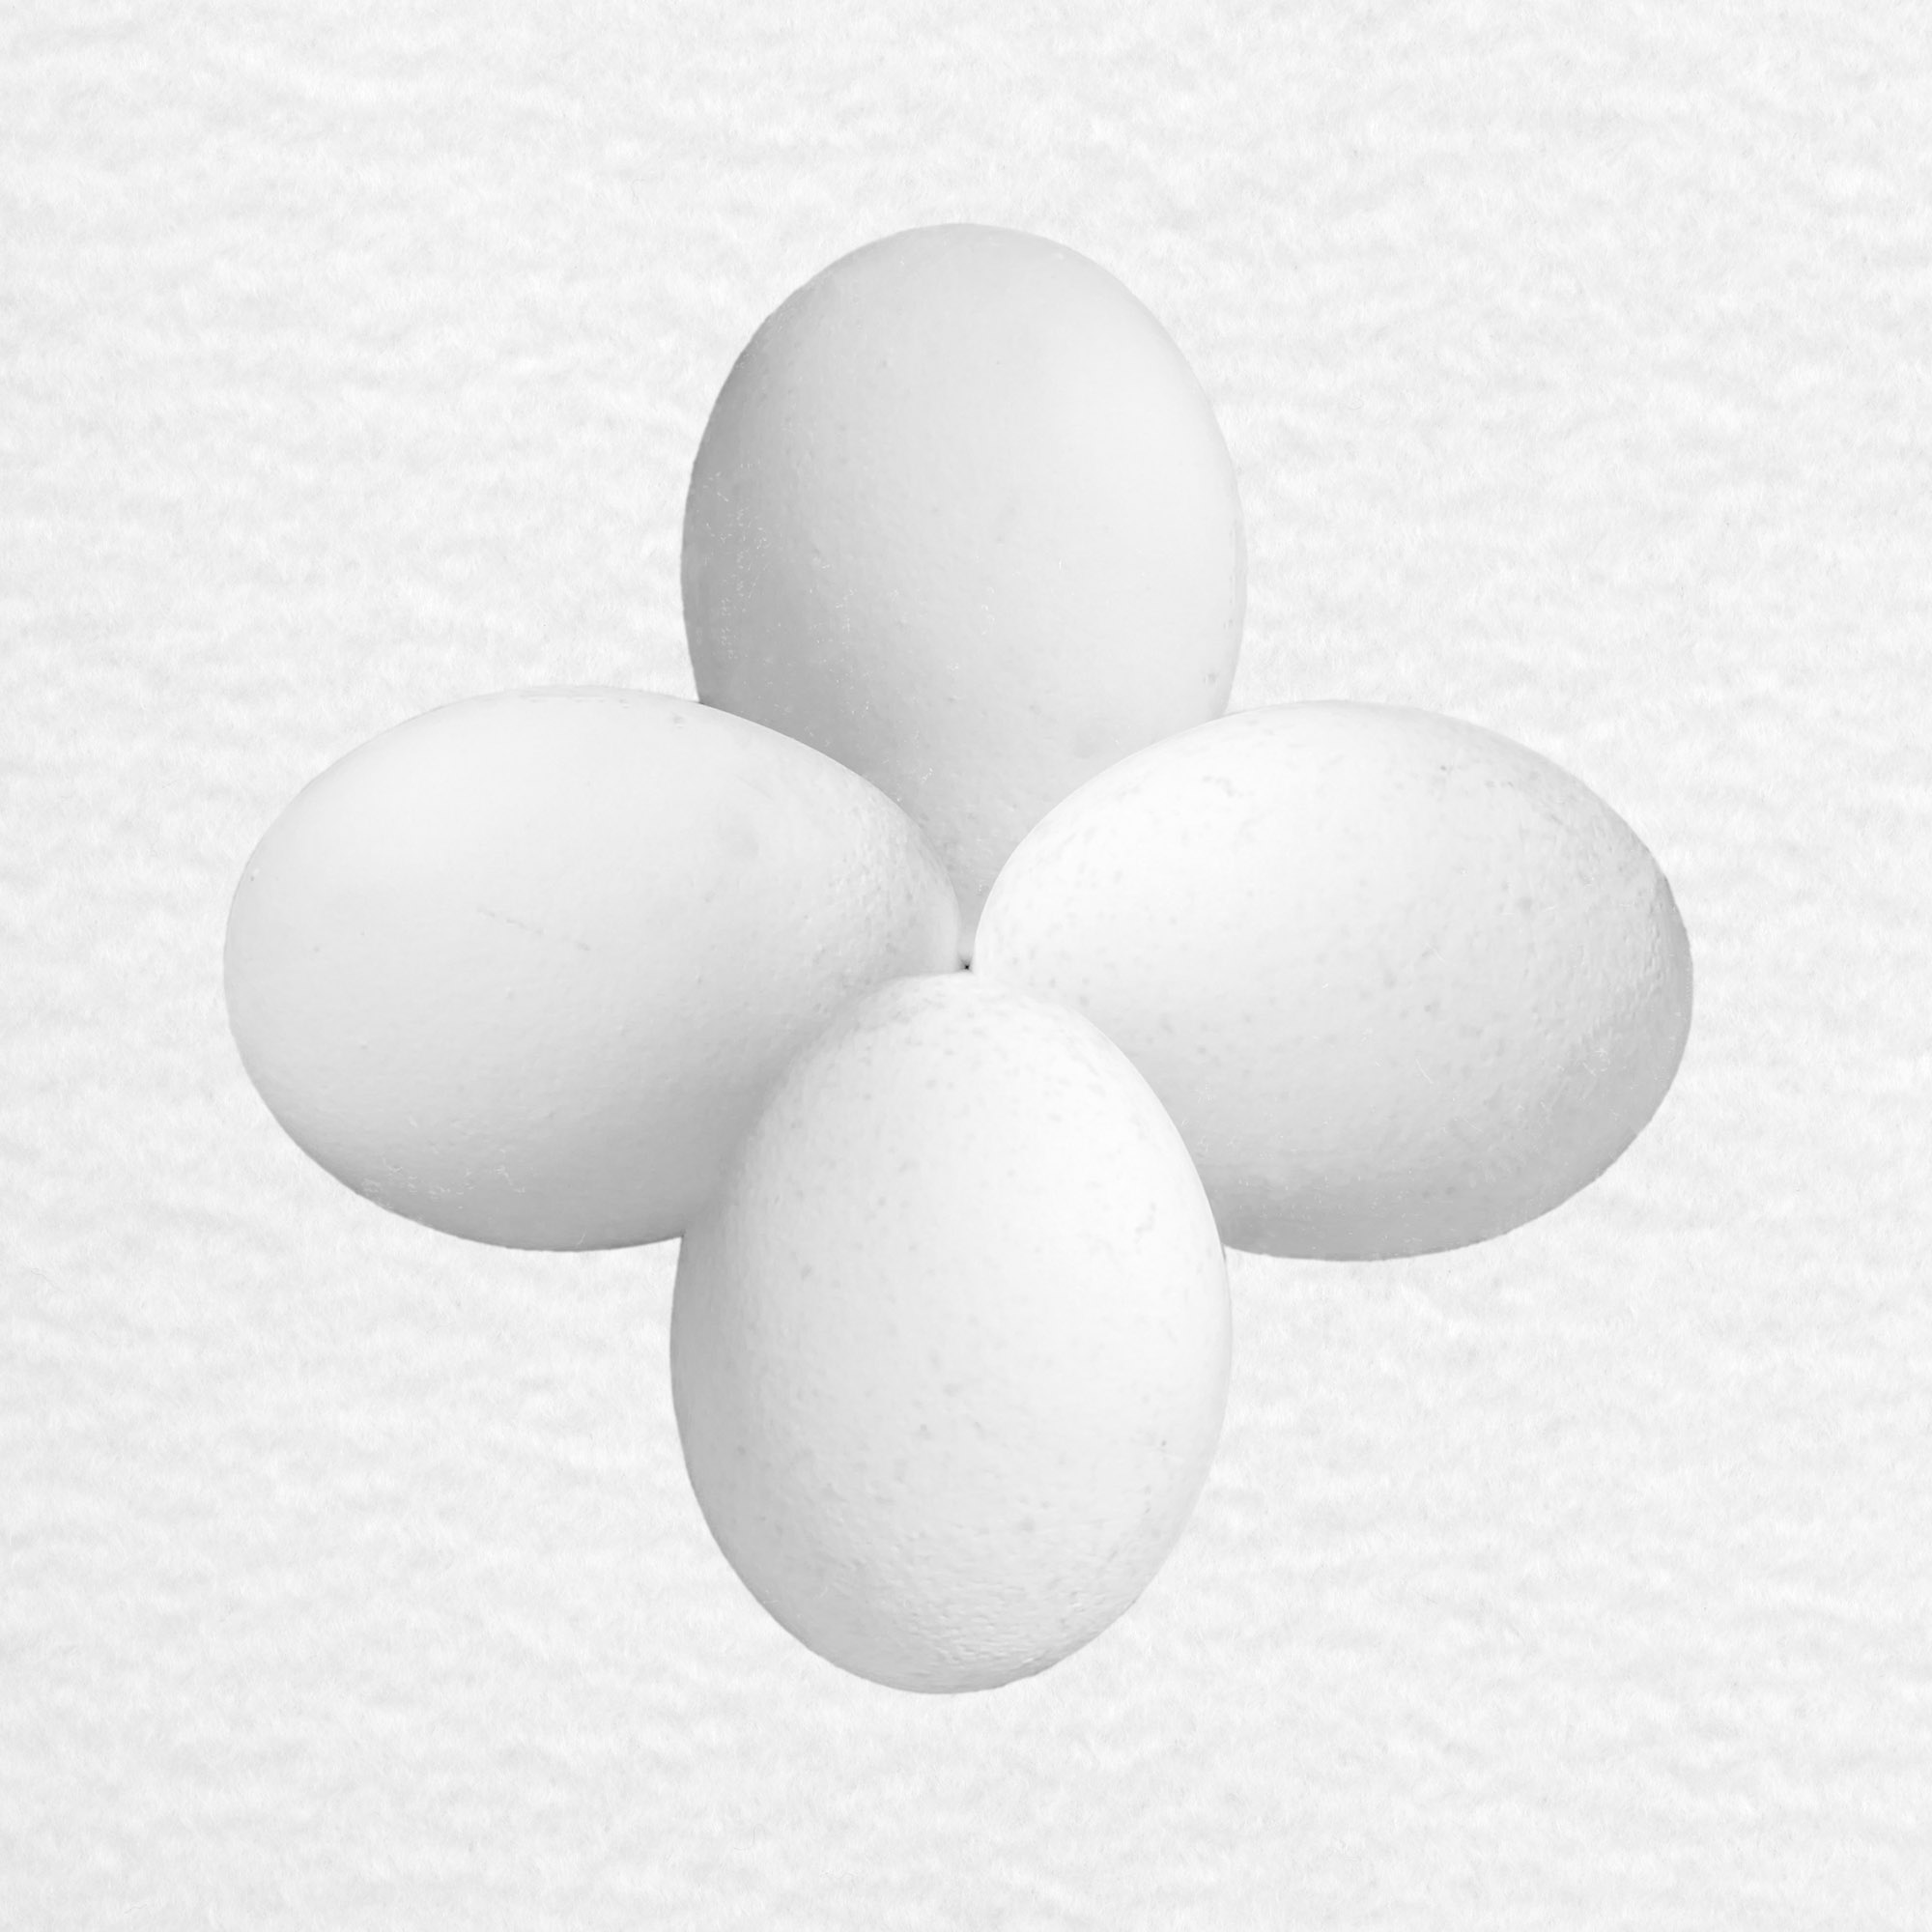 four white eggs